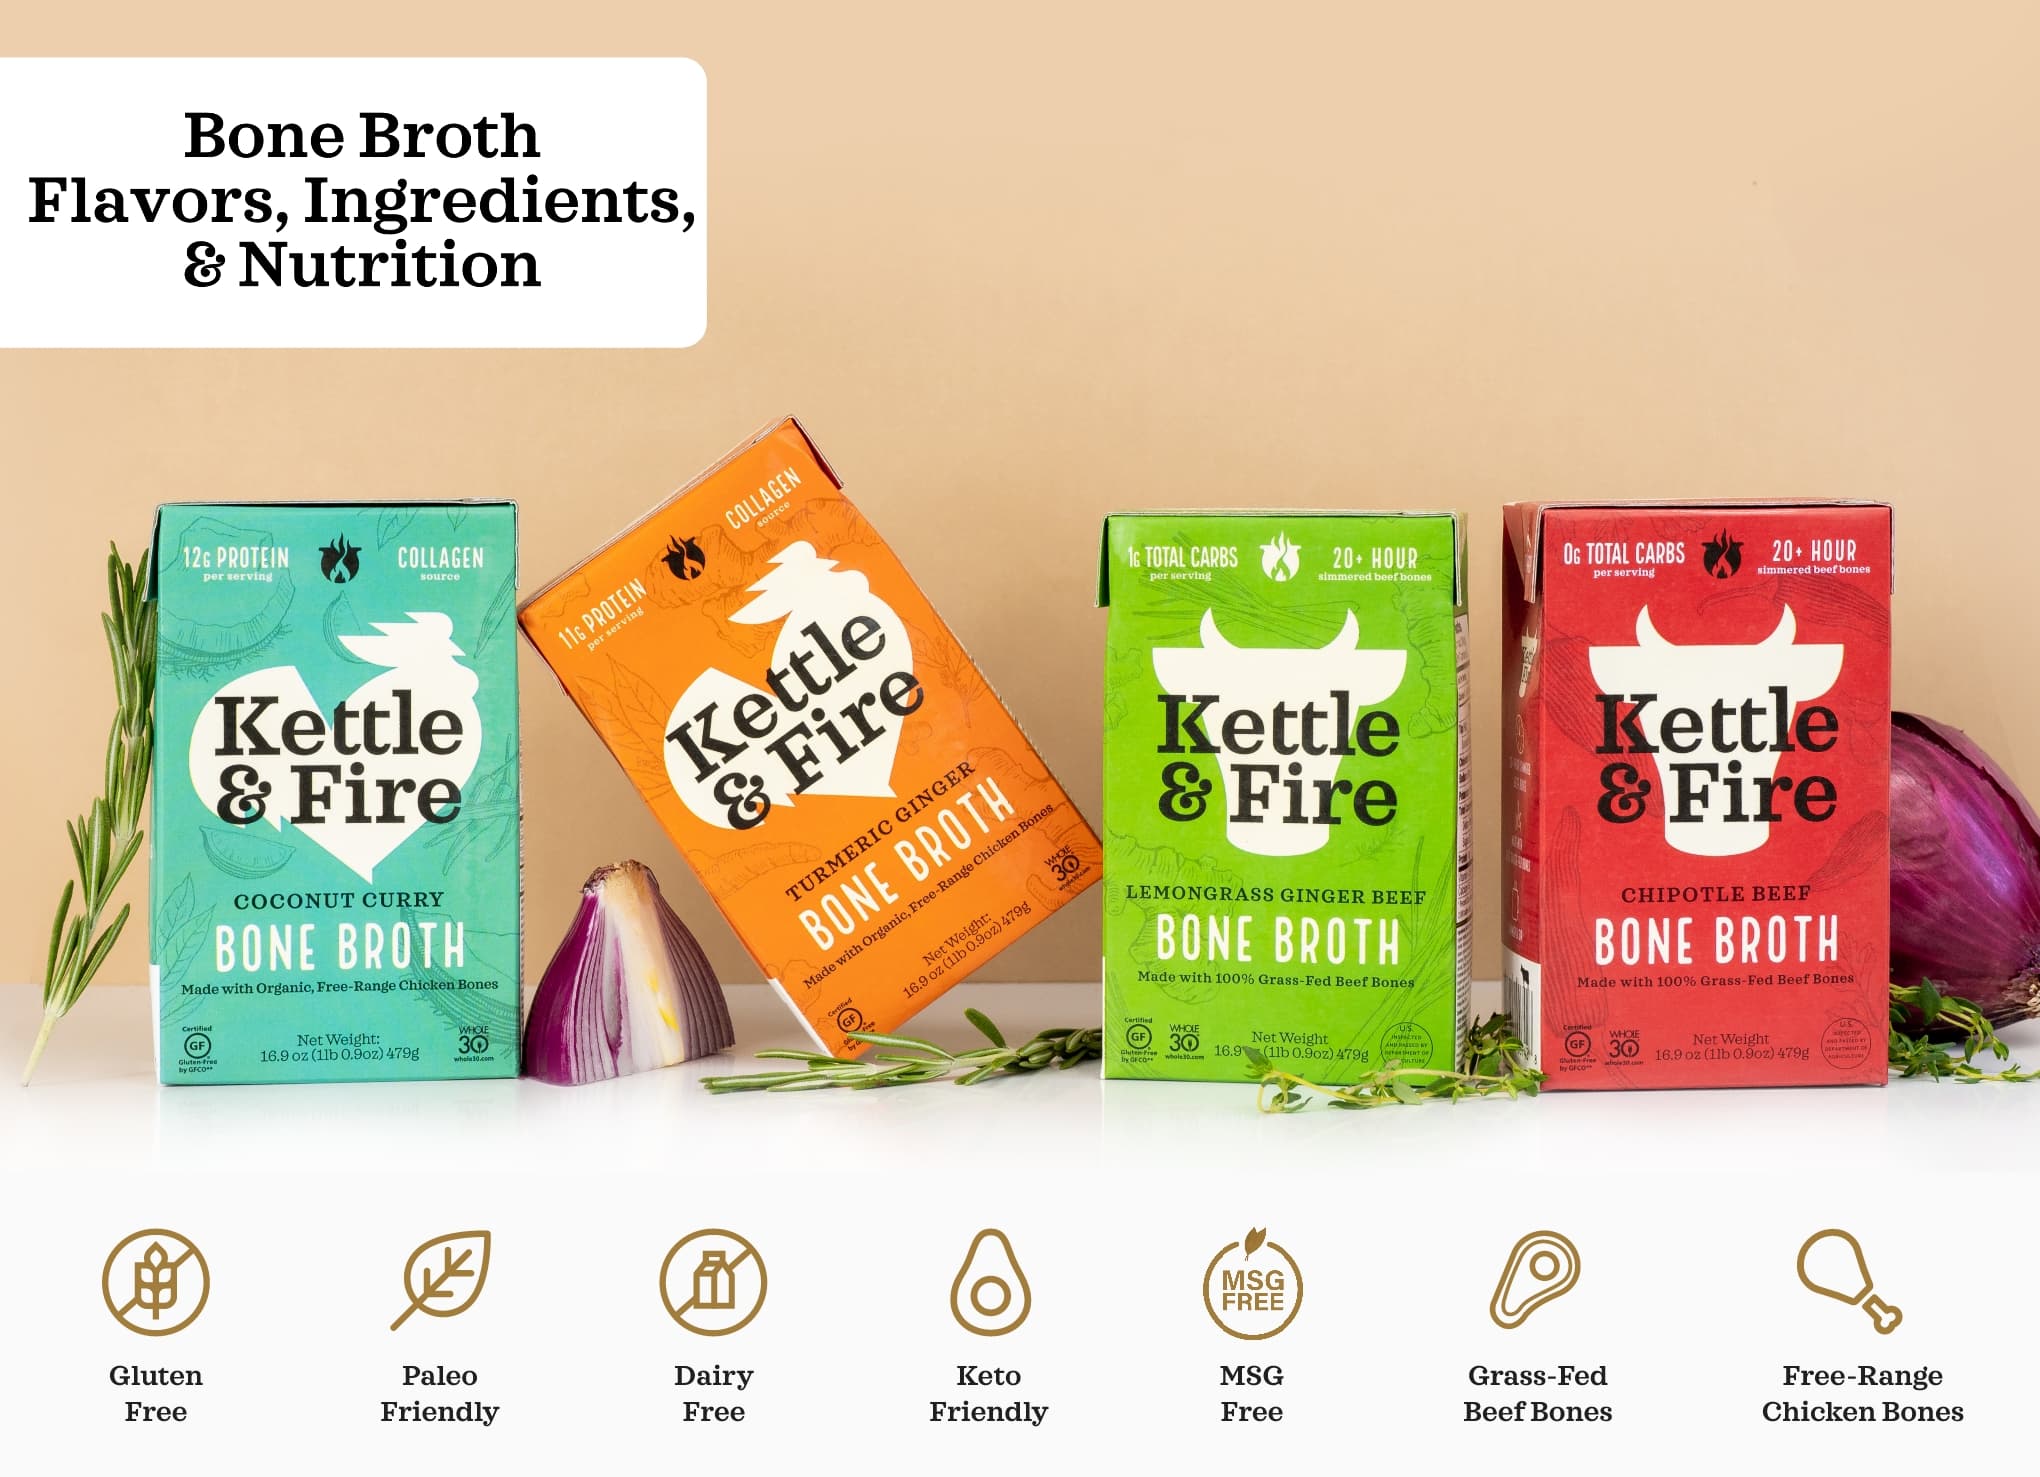 Bone Broth Flavors, Ingredients, & Nutrition